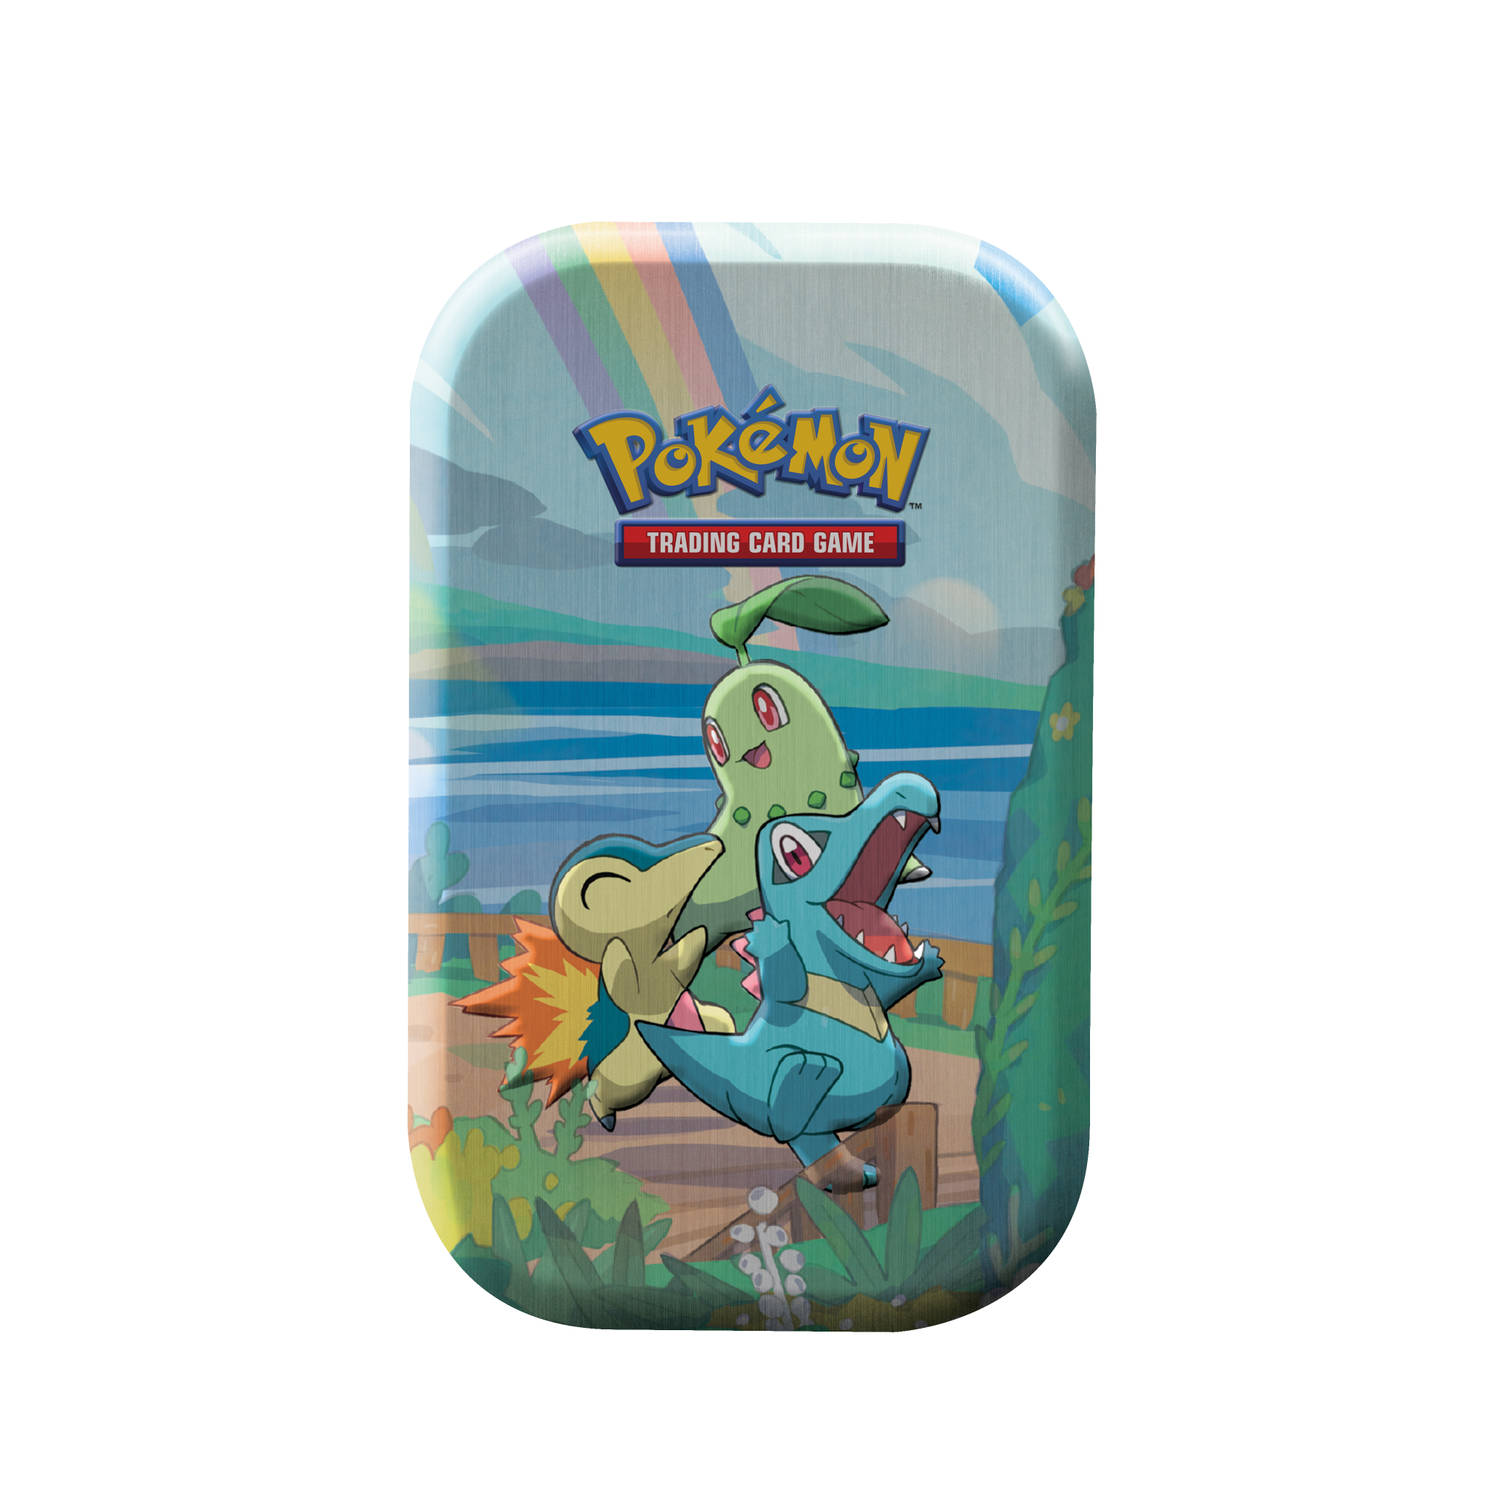 Achtervolging delicaat wet Pokémon Trading Card Game Celebrations mini tin | Blokker